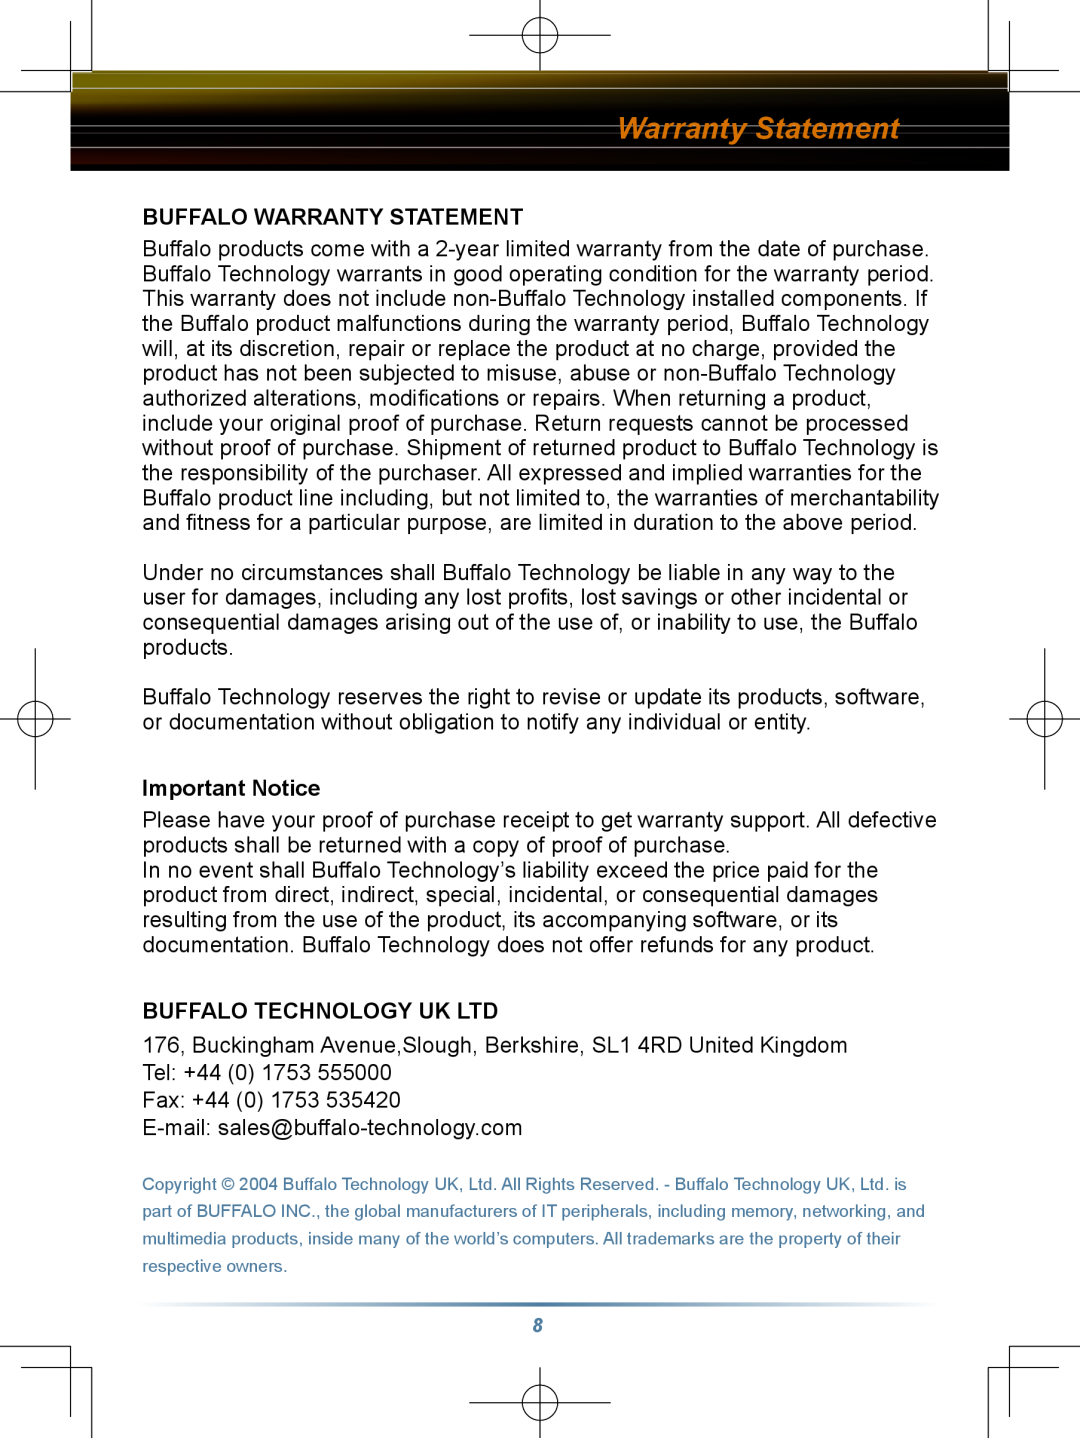 Buffalo Technology HD-HBU2 setup guide Buffalo Warranty Statement, Important Notice 